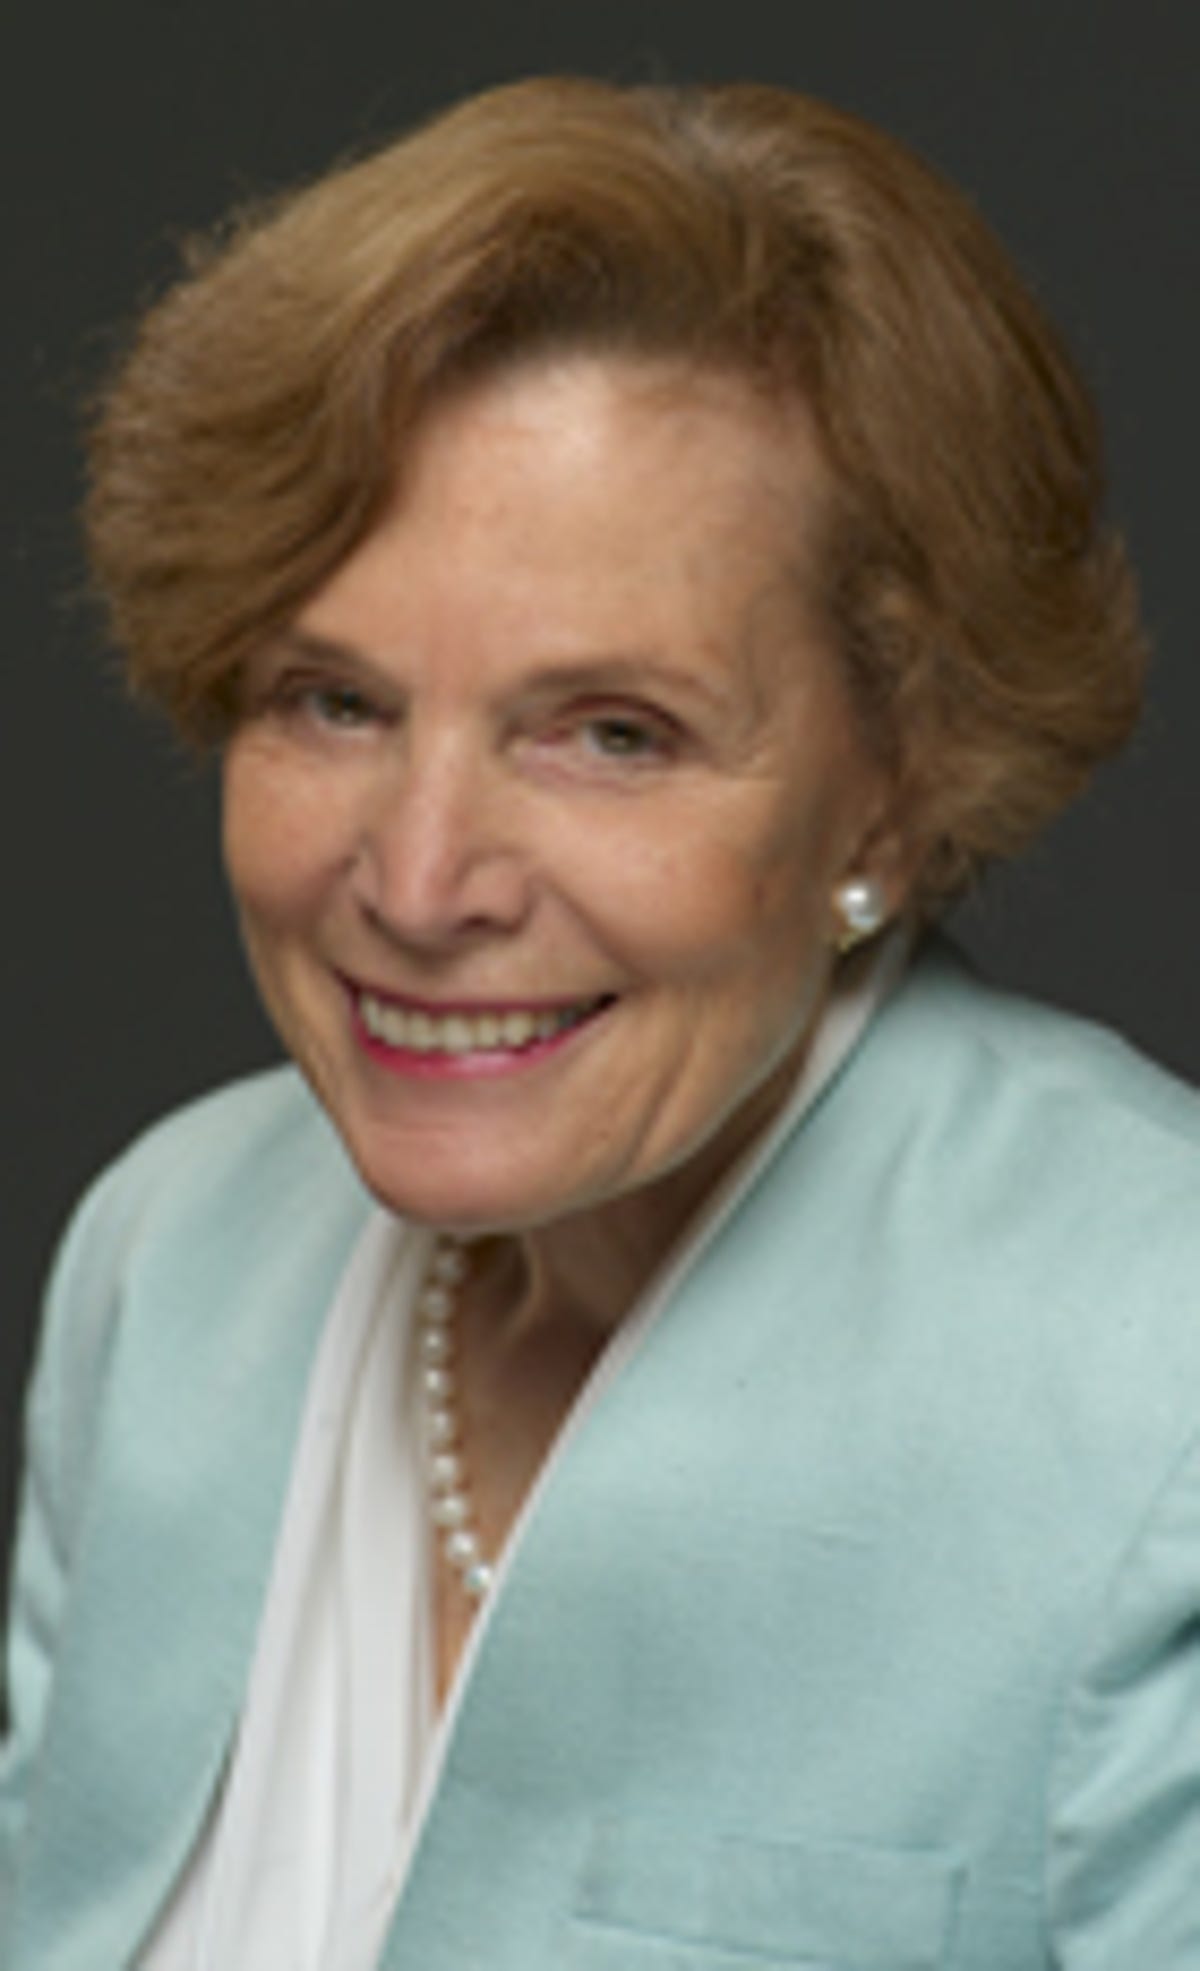 Oceanographer Sylvia Earle